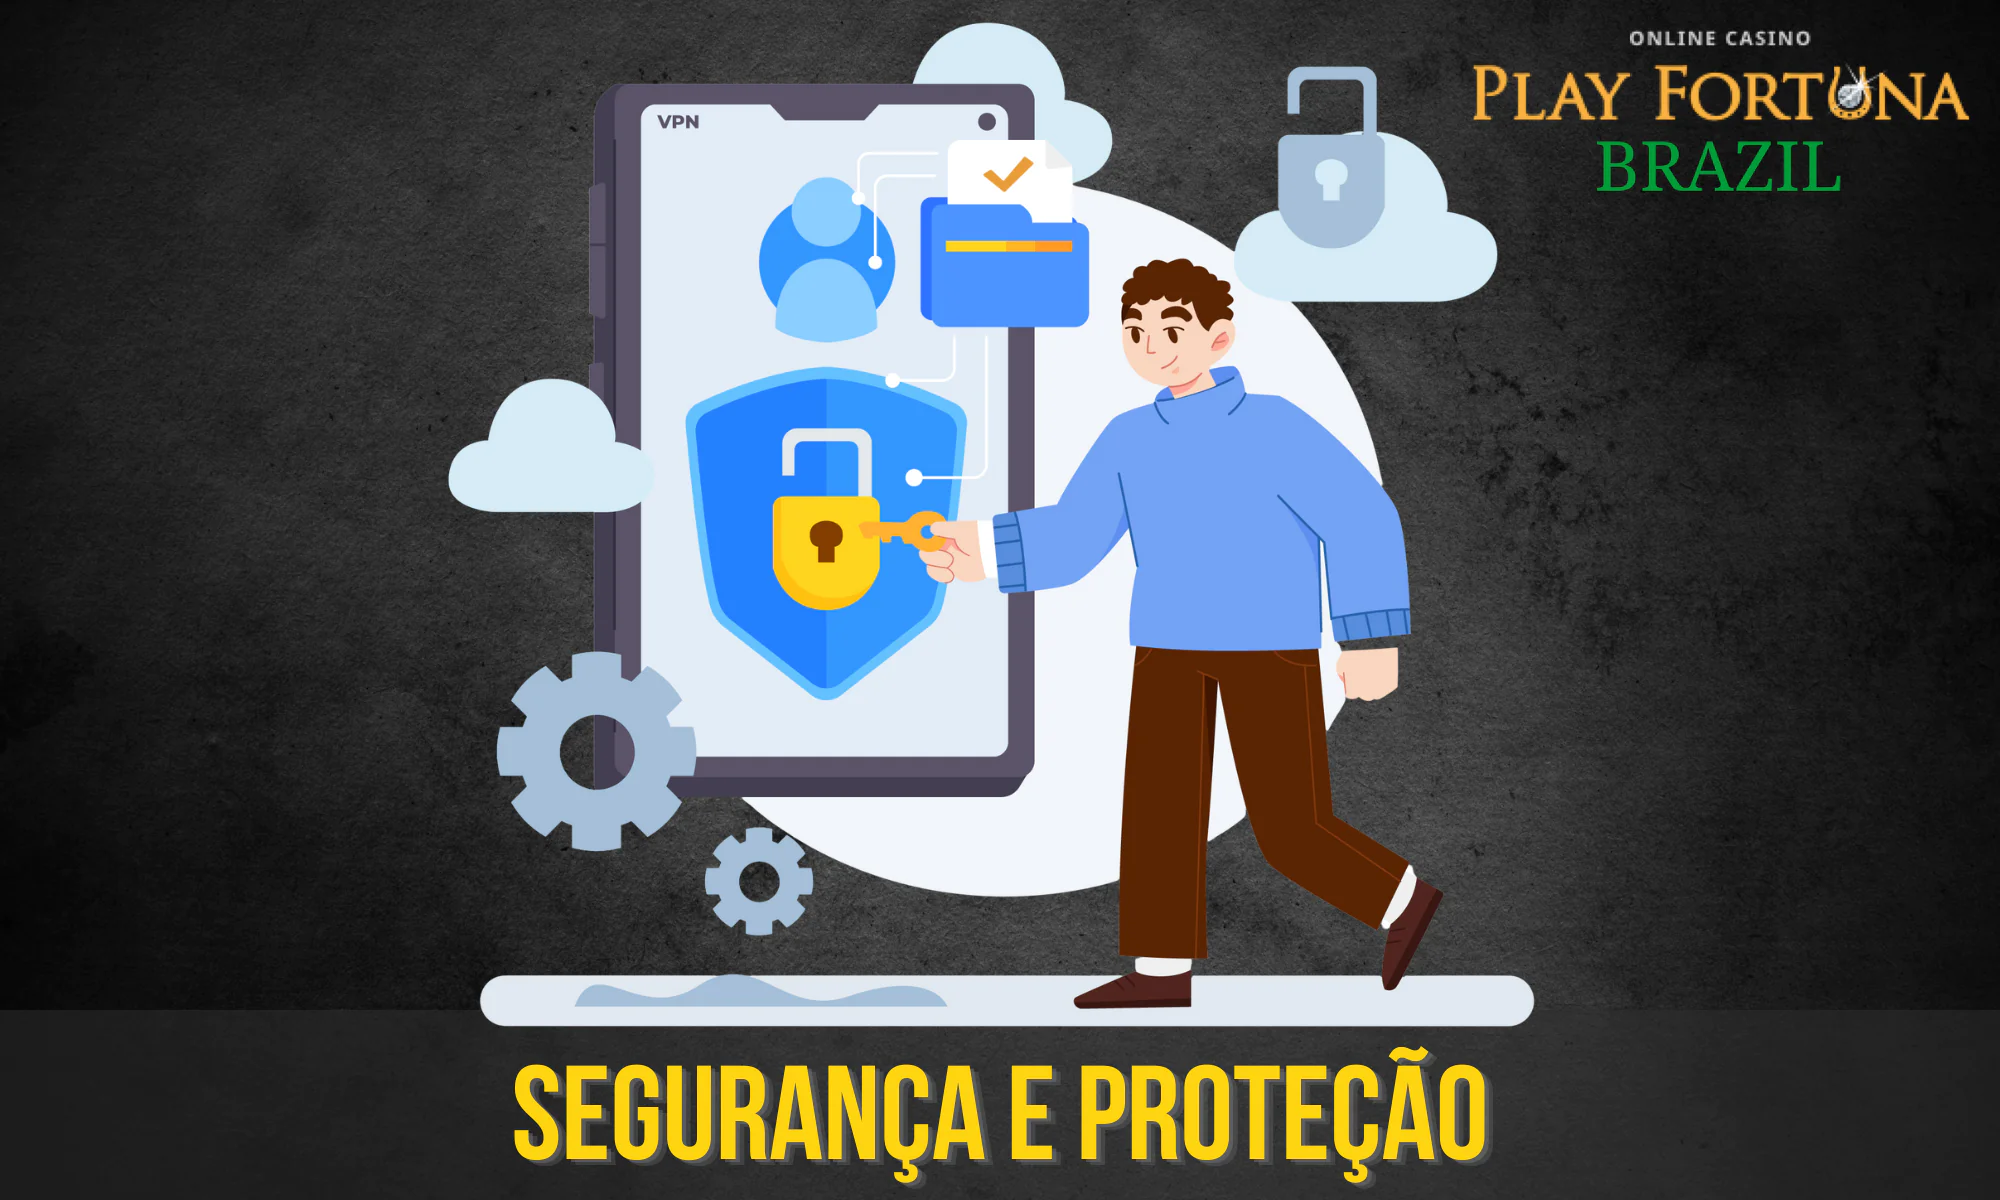 Os jogadores brasileiros têm a garantia de 100% de segurança